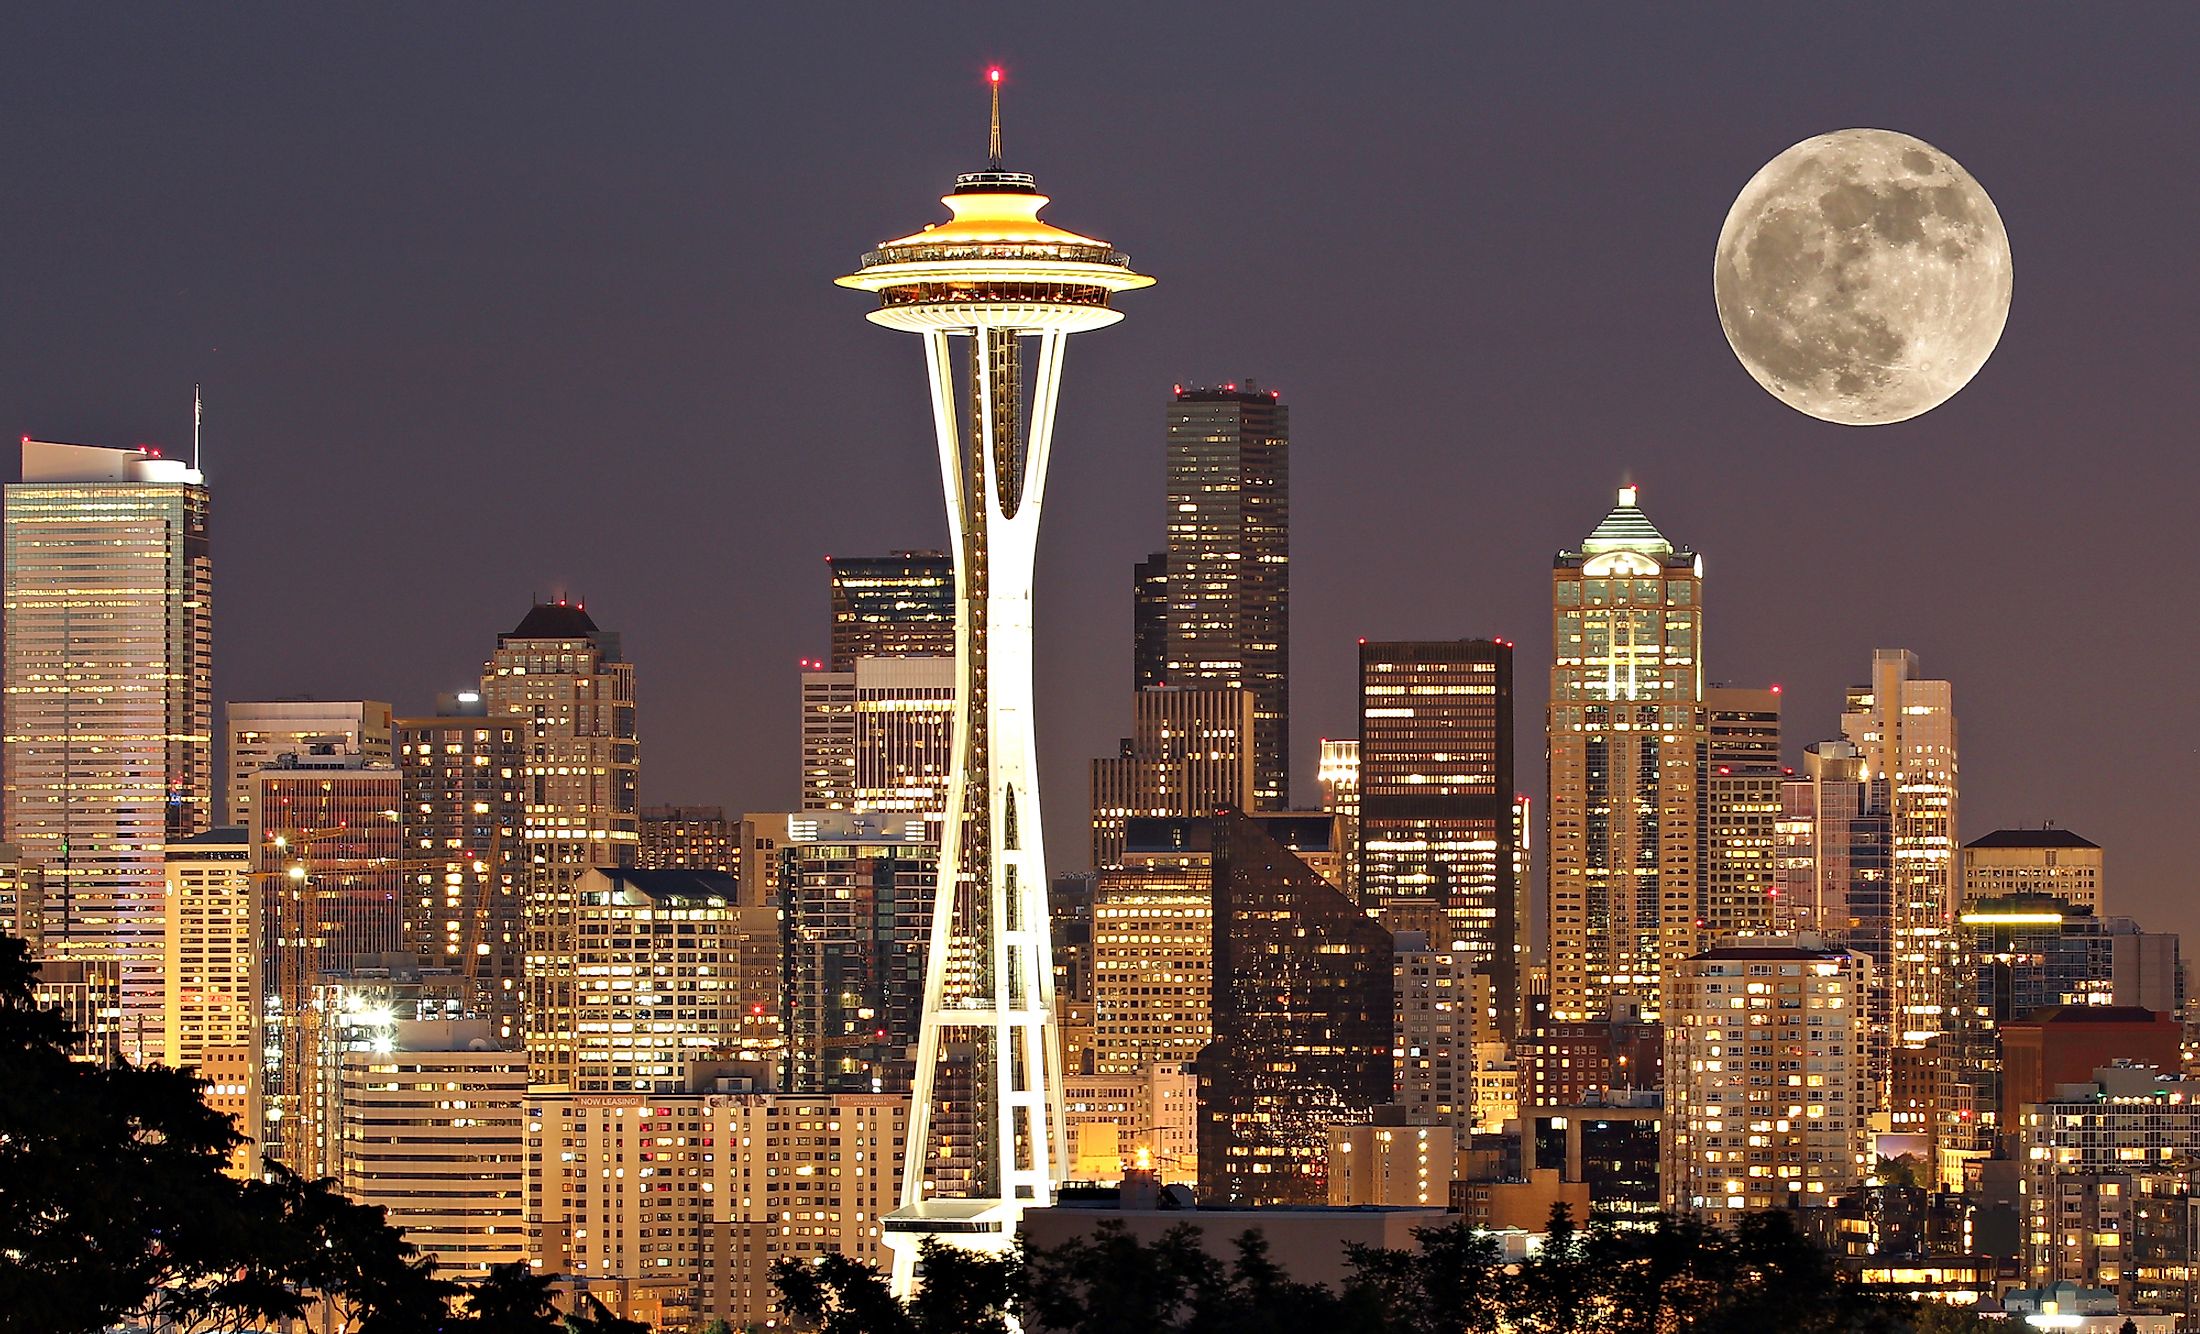 Skyline of Seattle on a full moon night.